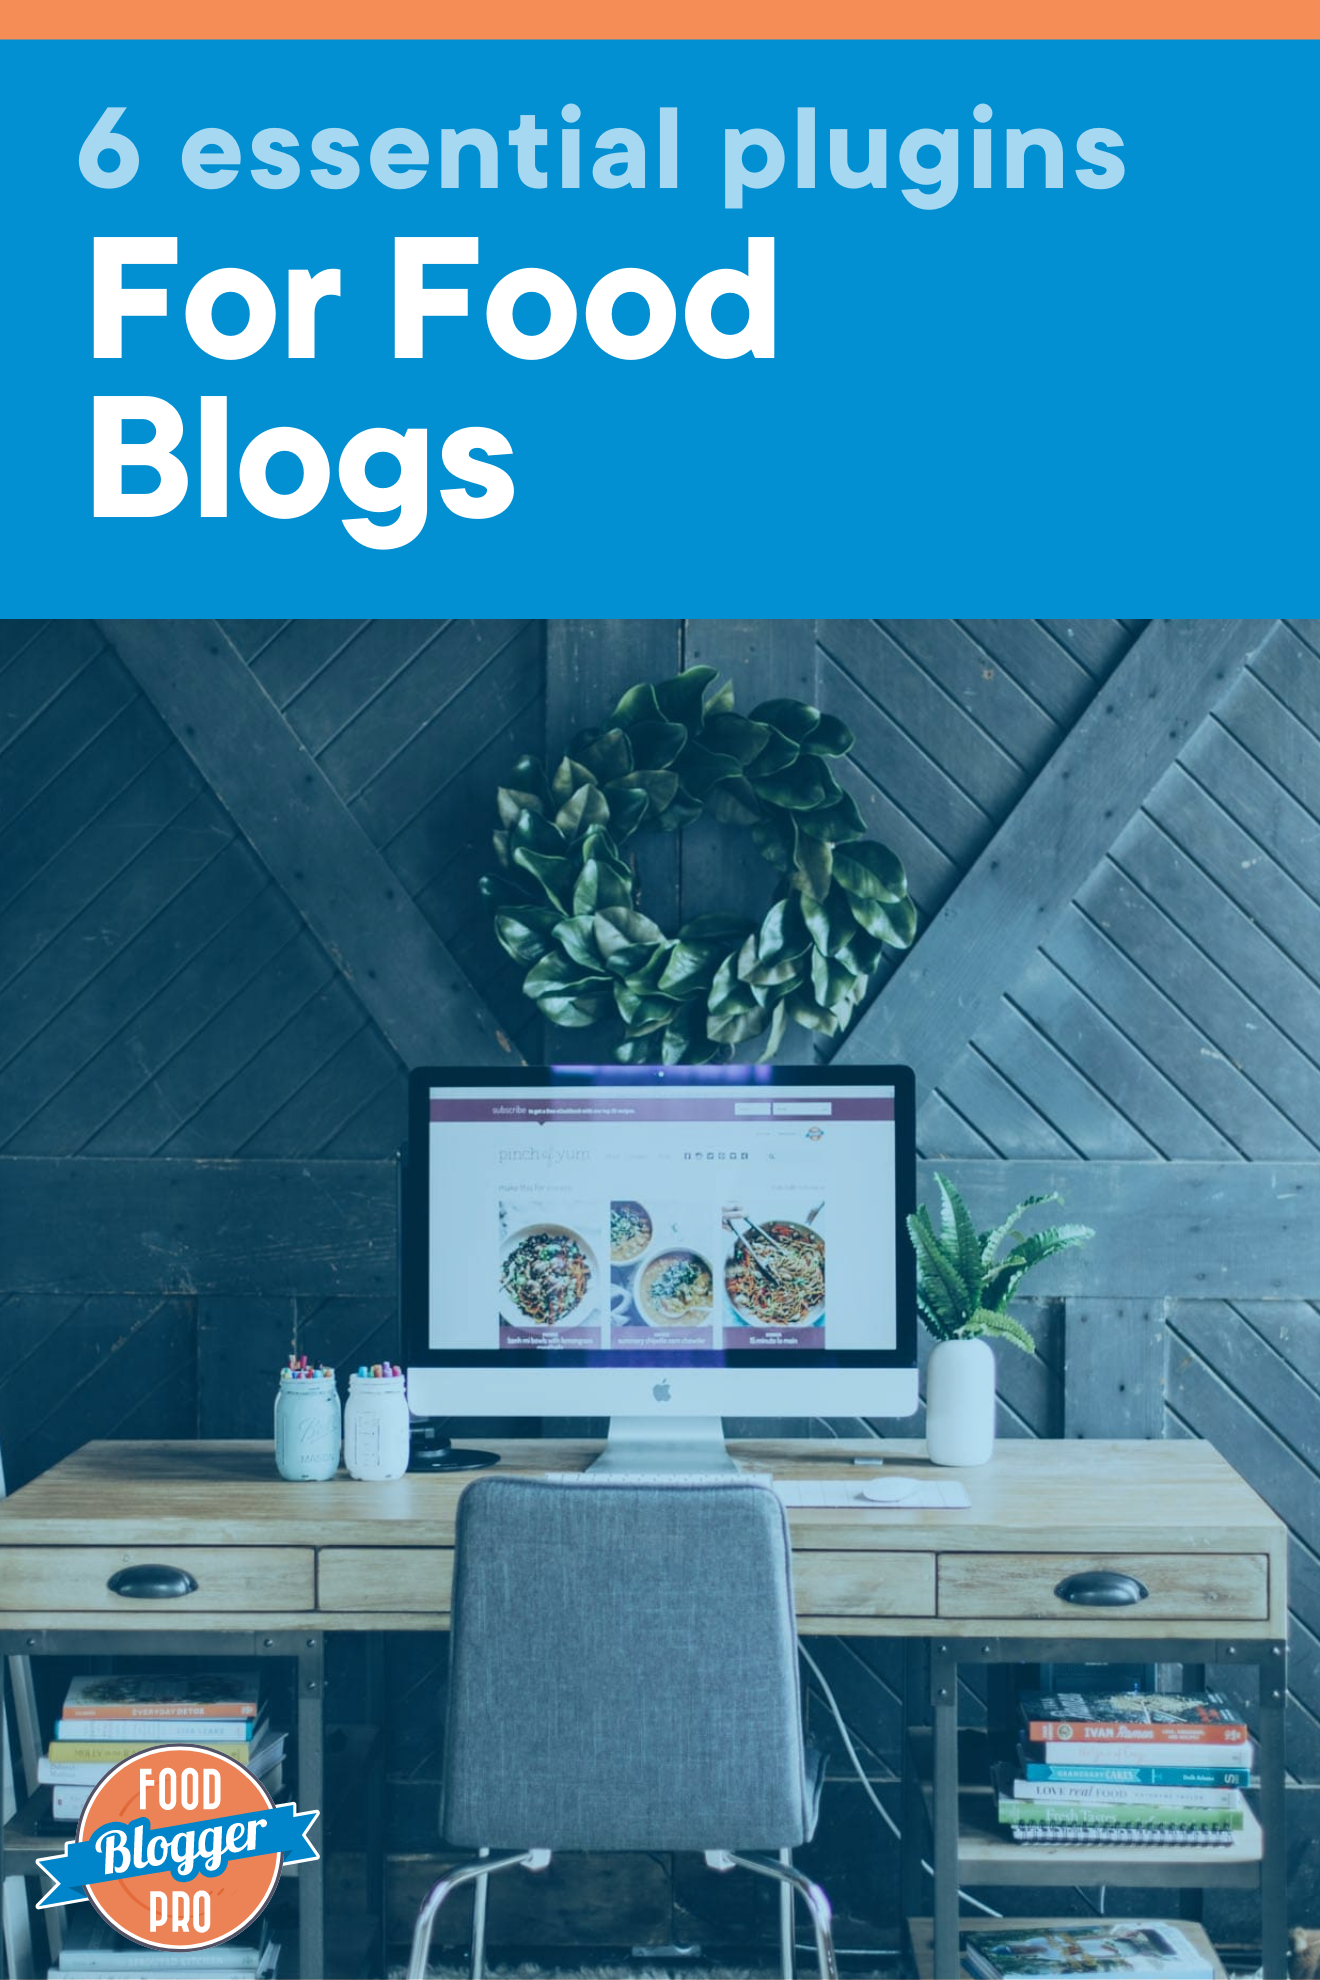 计算机台和食物博客拉起屏幕并命名博客文章“6FoodBlogs基本插件